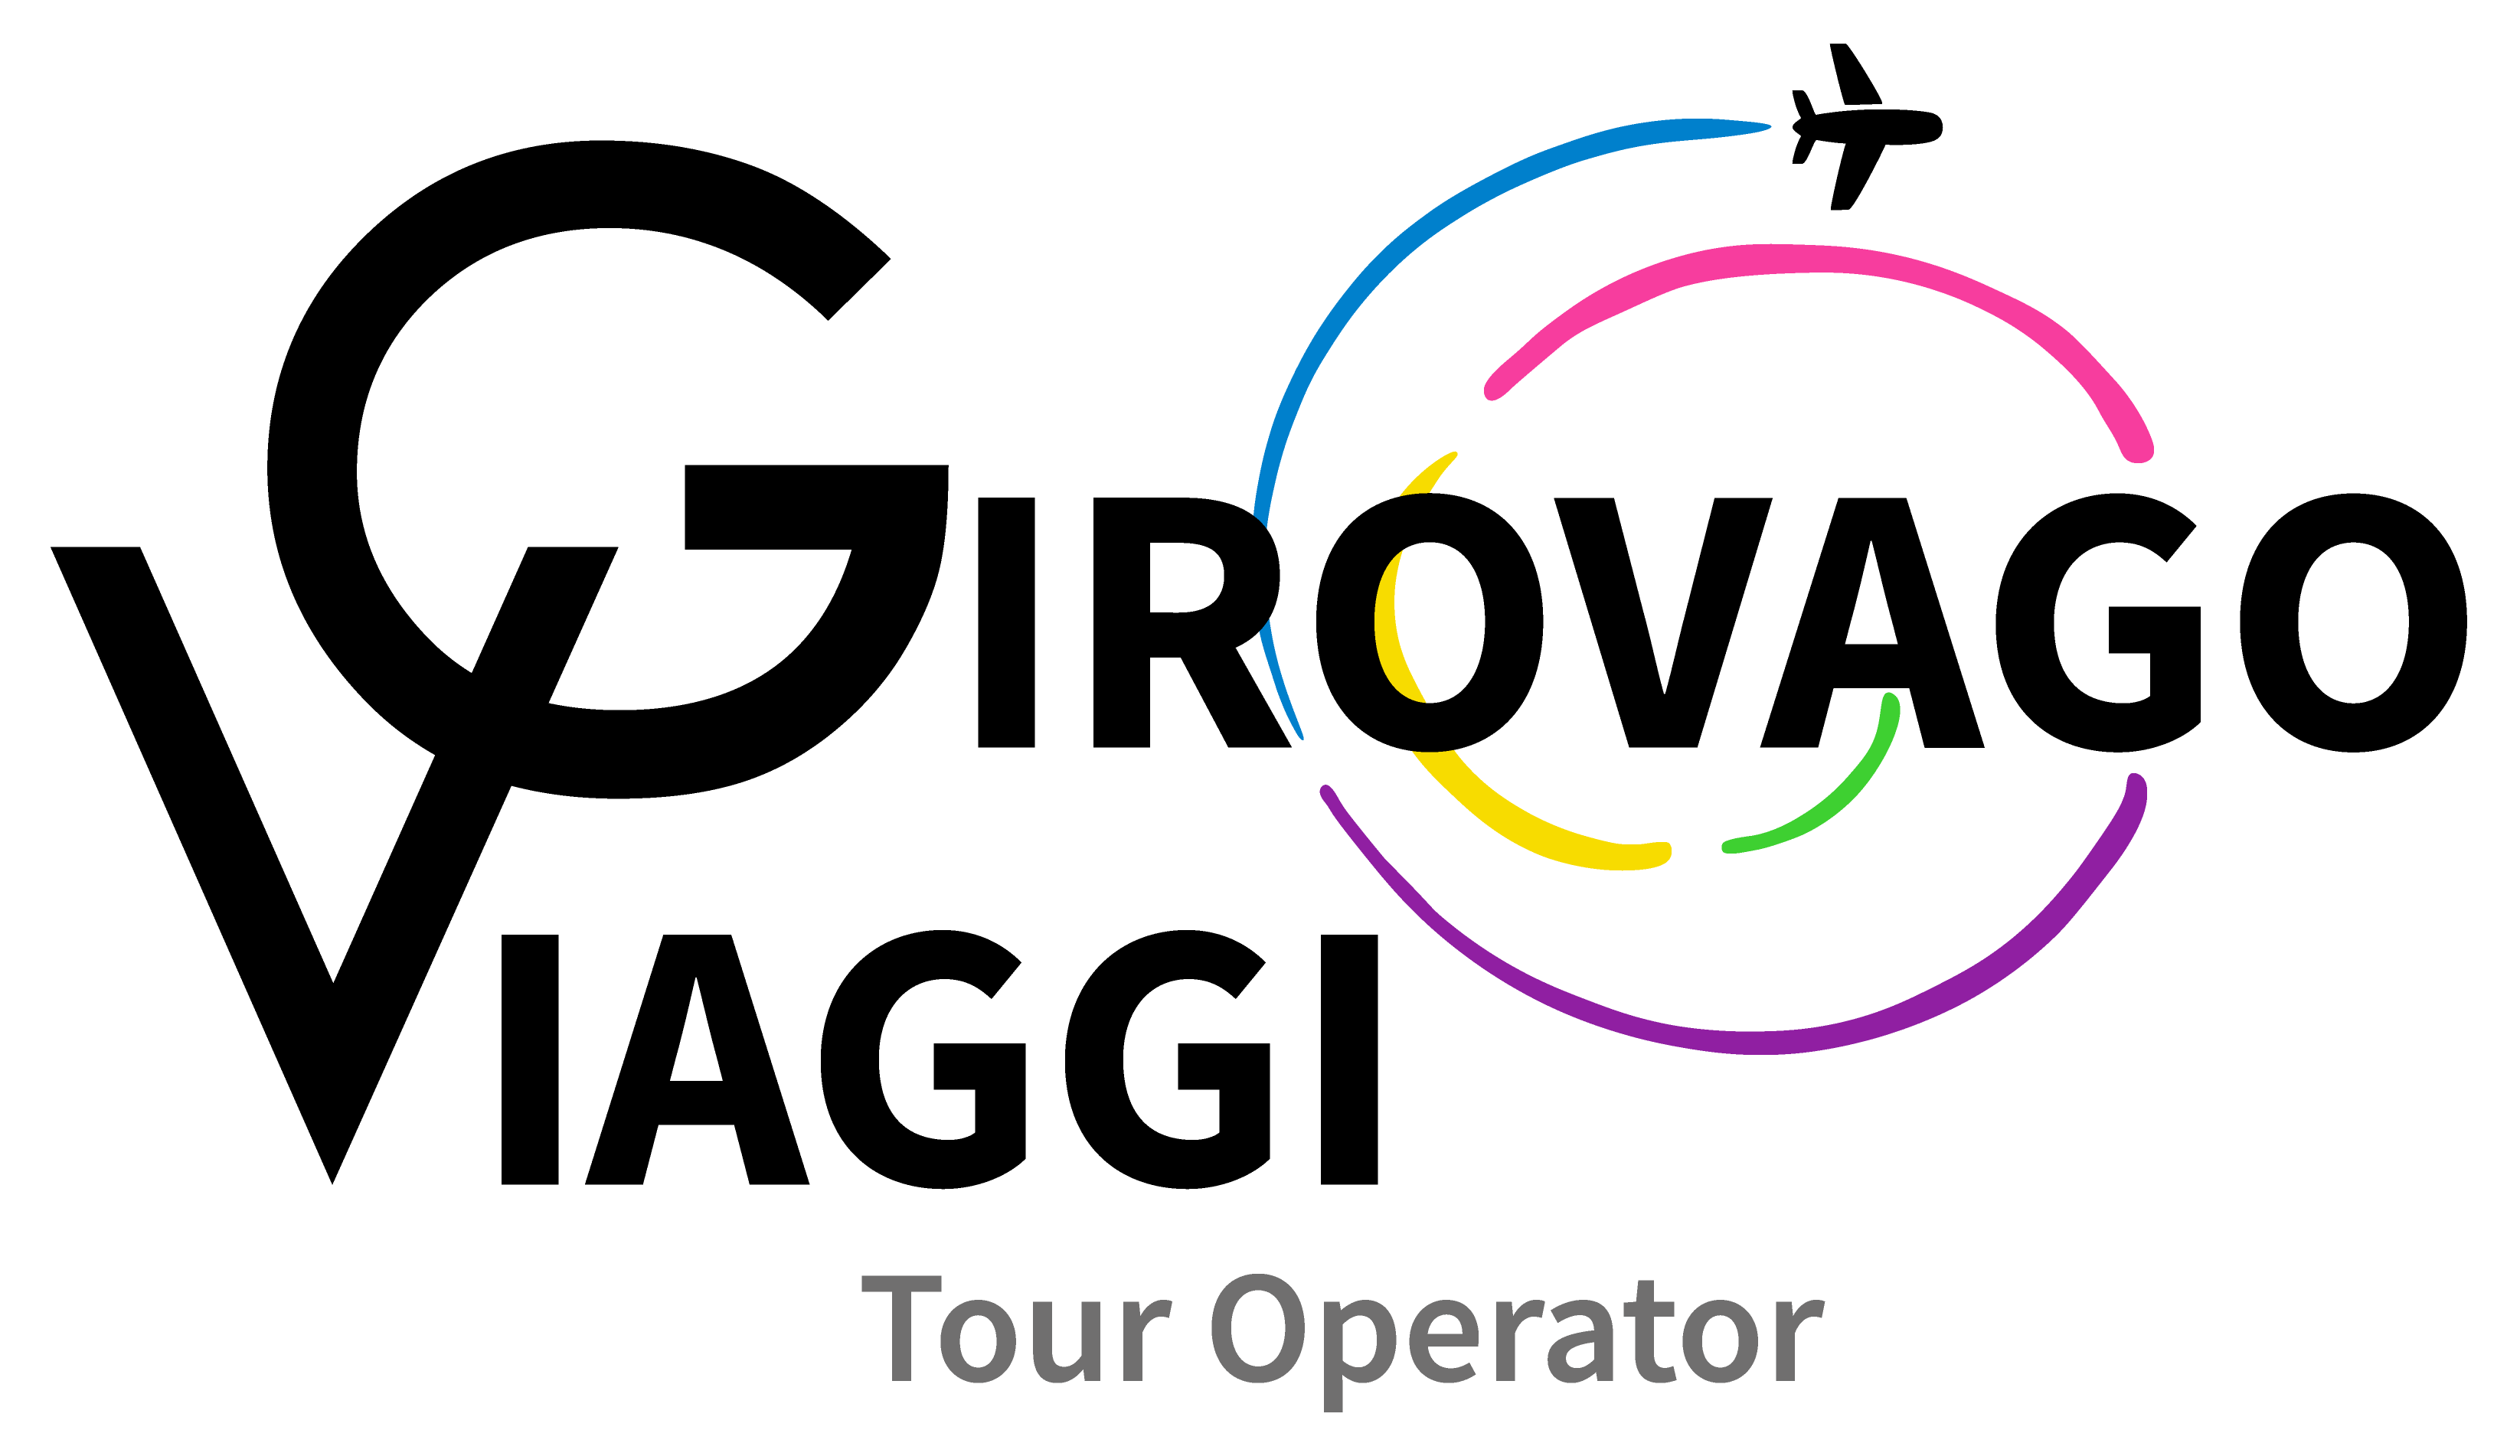 Girovago Viaggi - Tour Operator